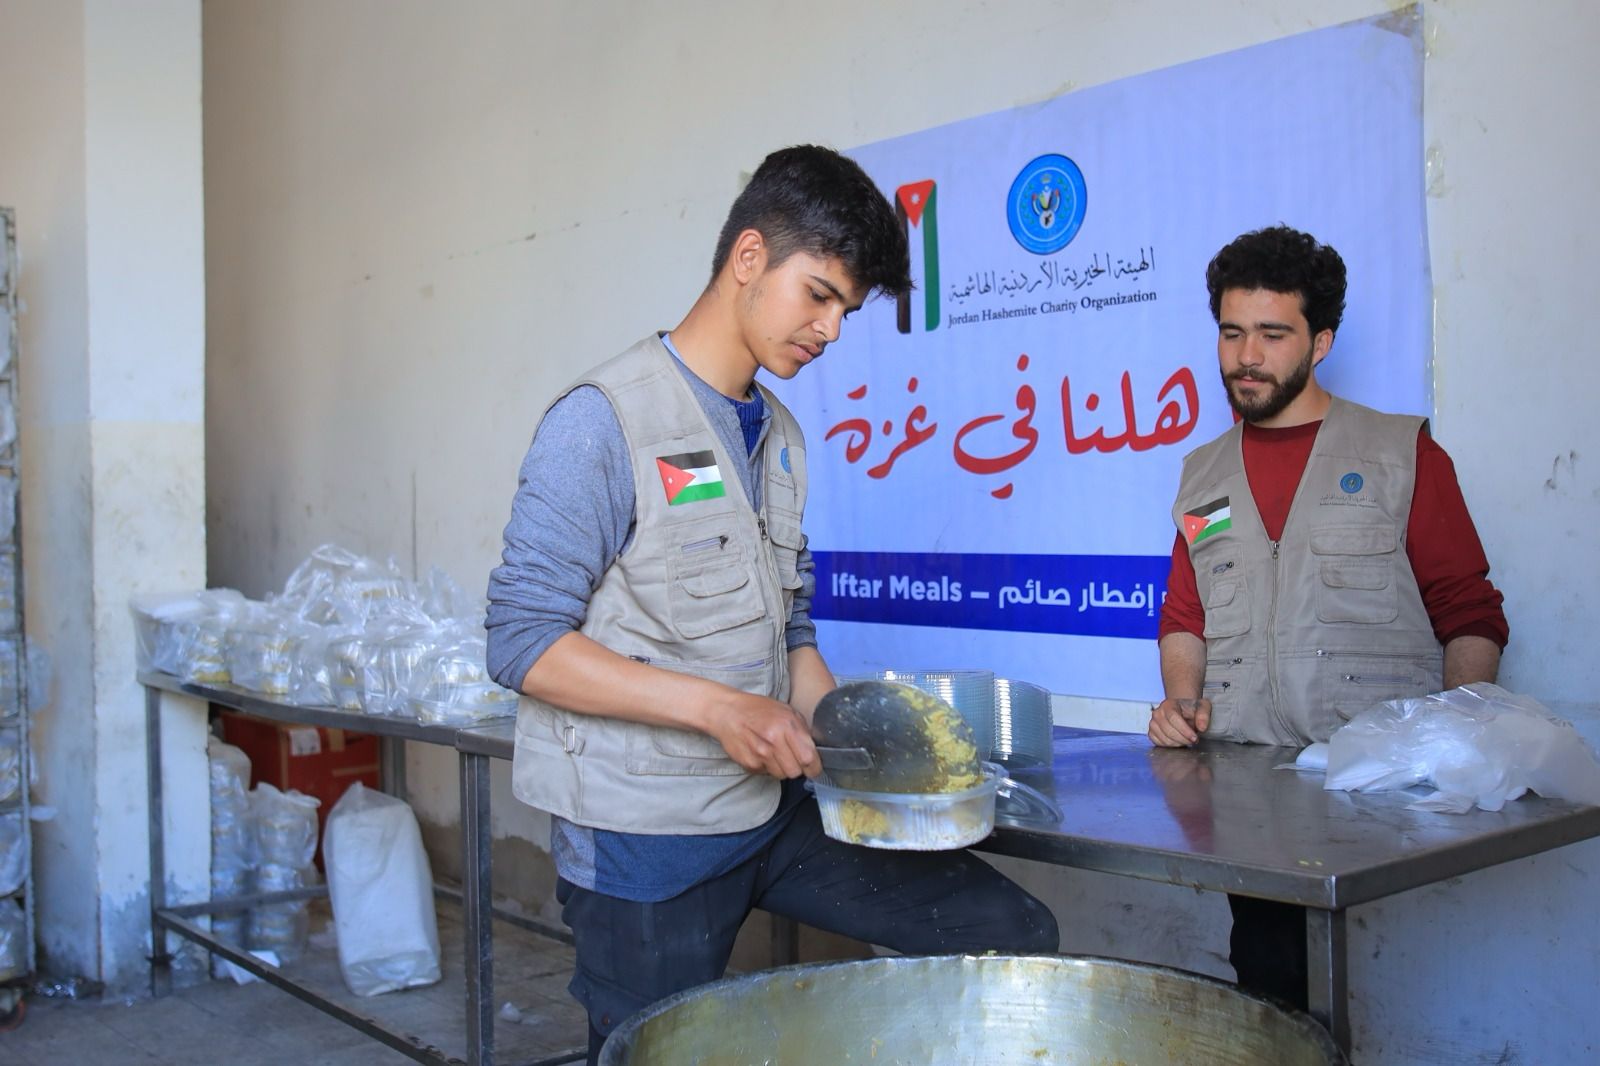 الهيئة الخيرية الهاشمية توزع ربع مليون وجبة إفطار في شهر رمضان بغزة